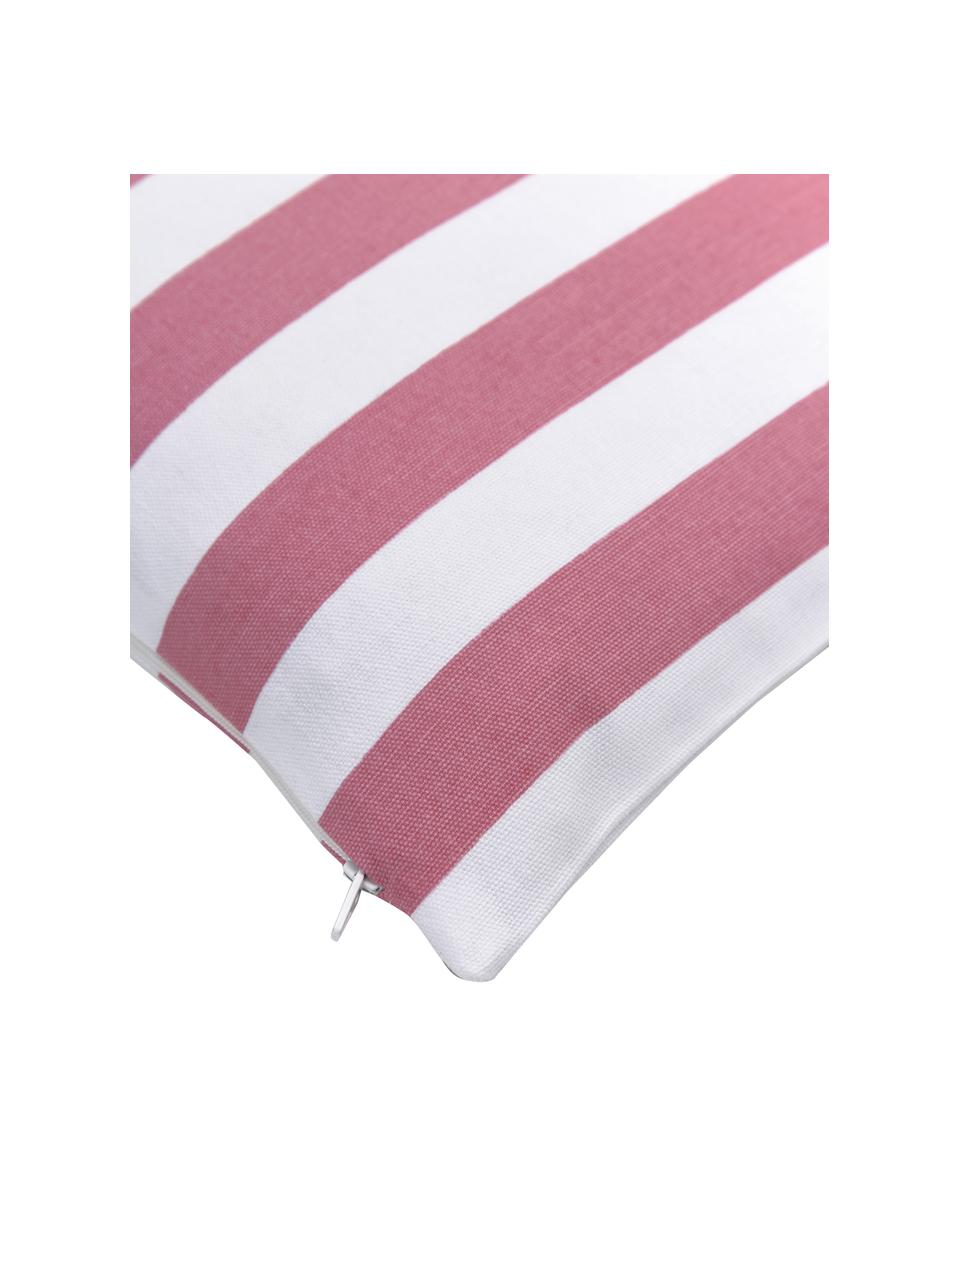 Gestreepte kussenhoes Timon in roze/wit, 100% katoen, Roze, wit, B 30 x L 50 cm